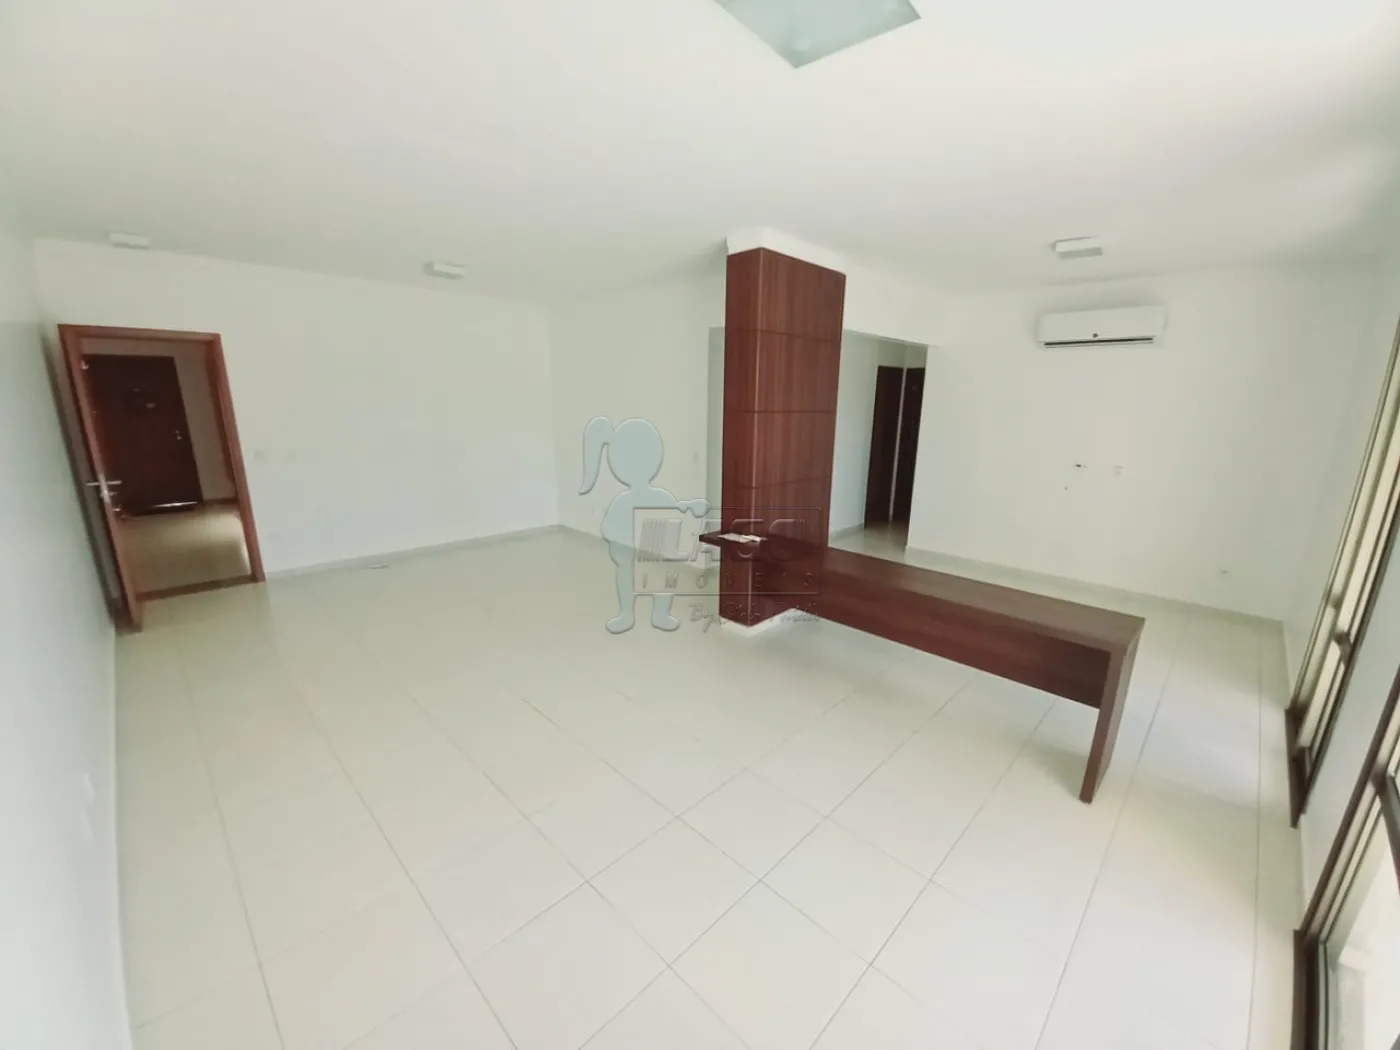 Alugar Apartamentos / Padrão em Ribeirão Preto R$ 4.000,00 - Foto 3